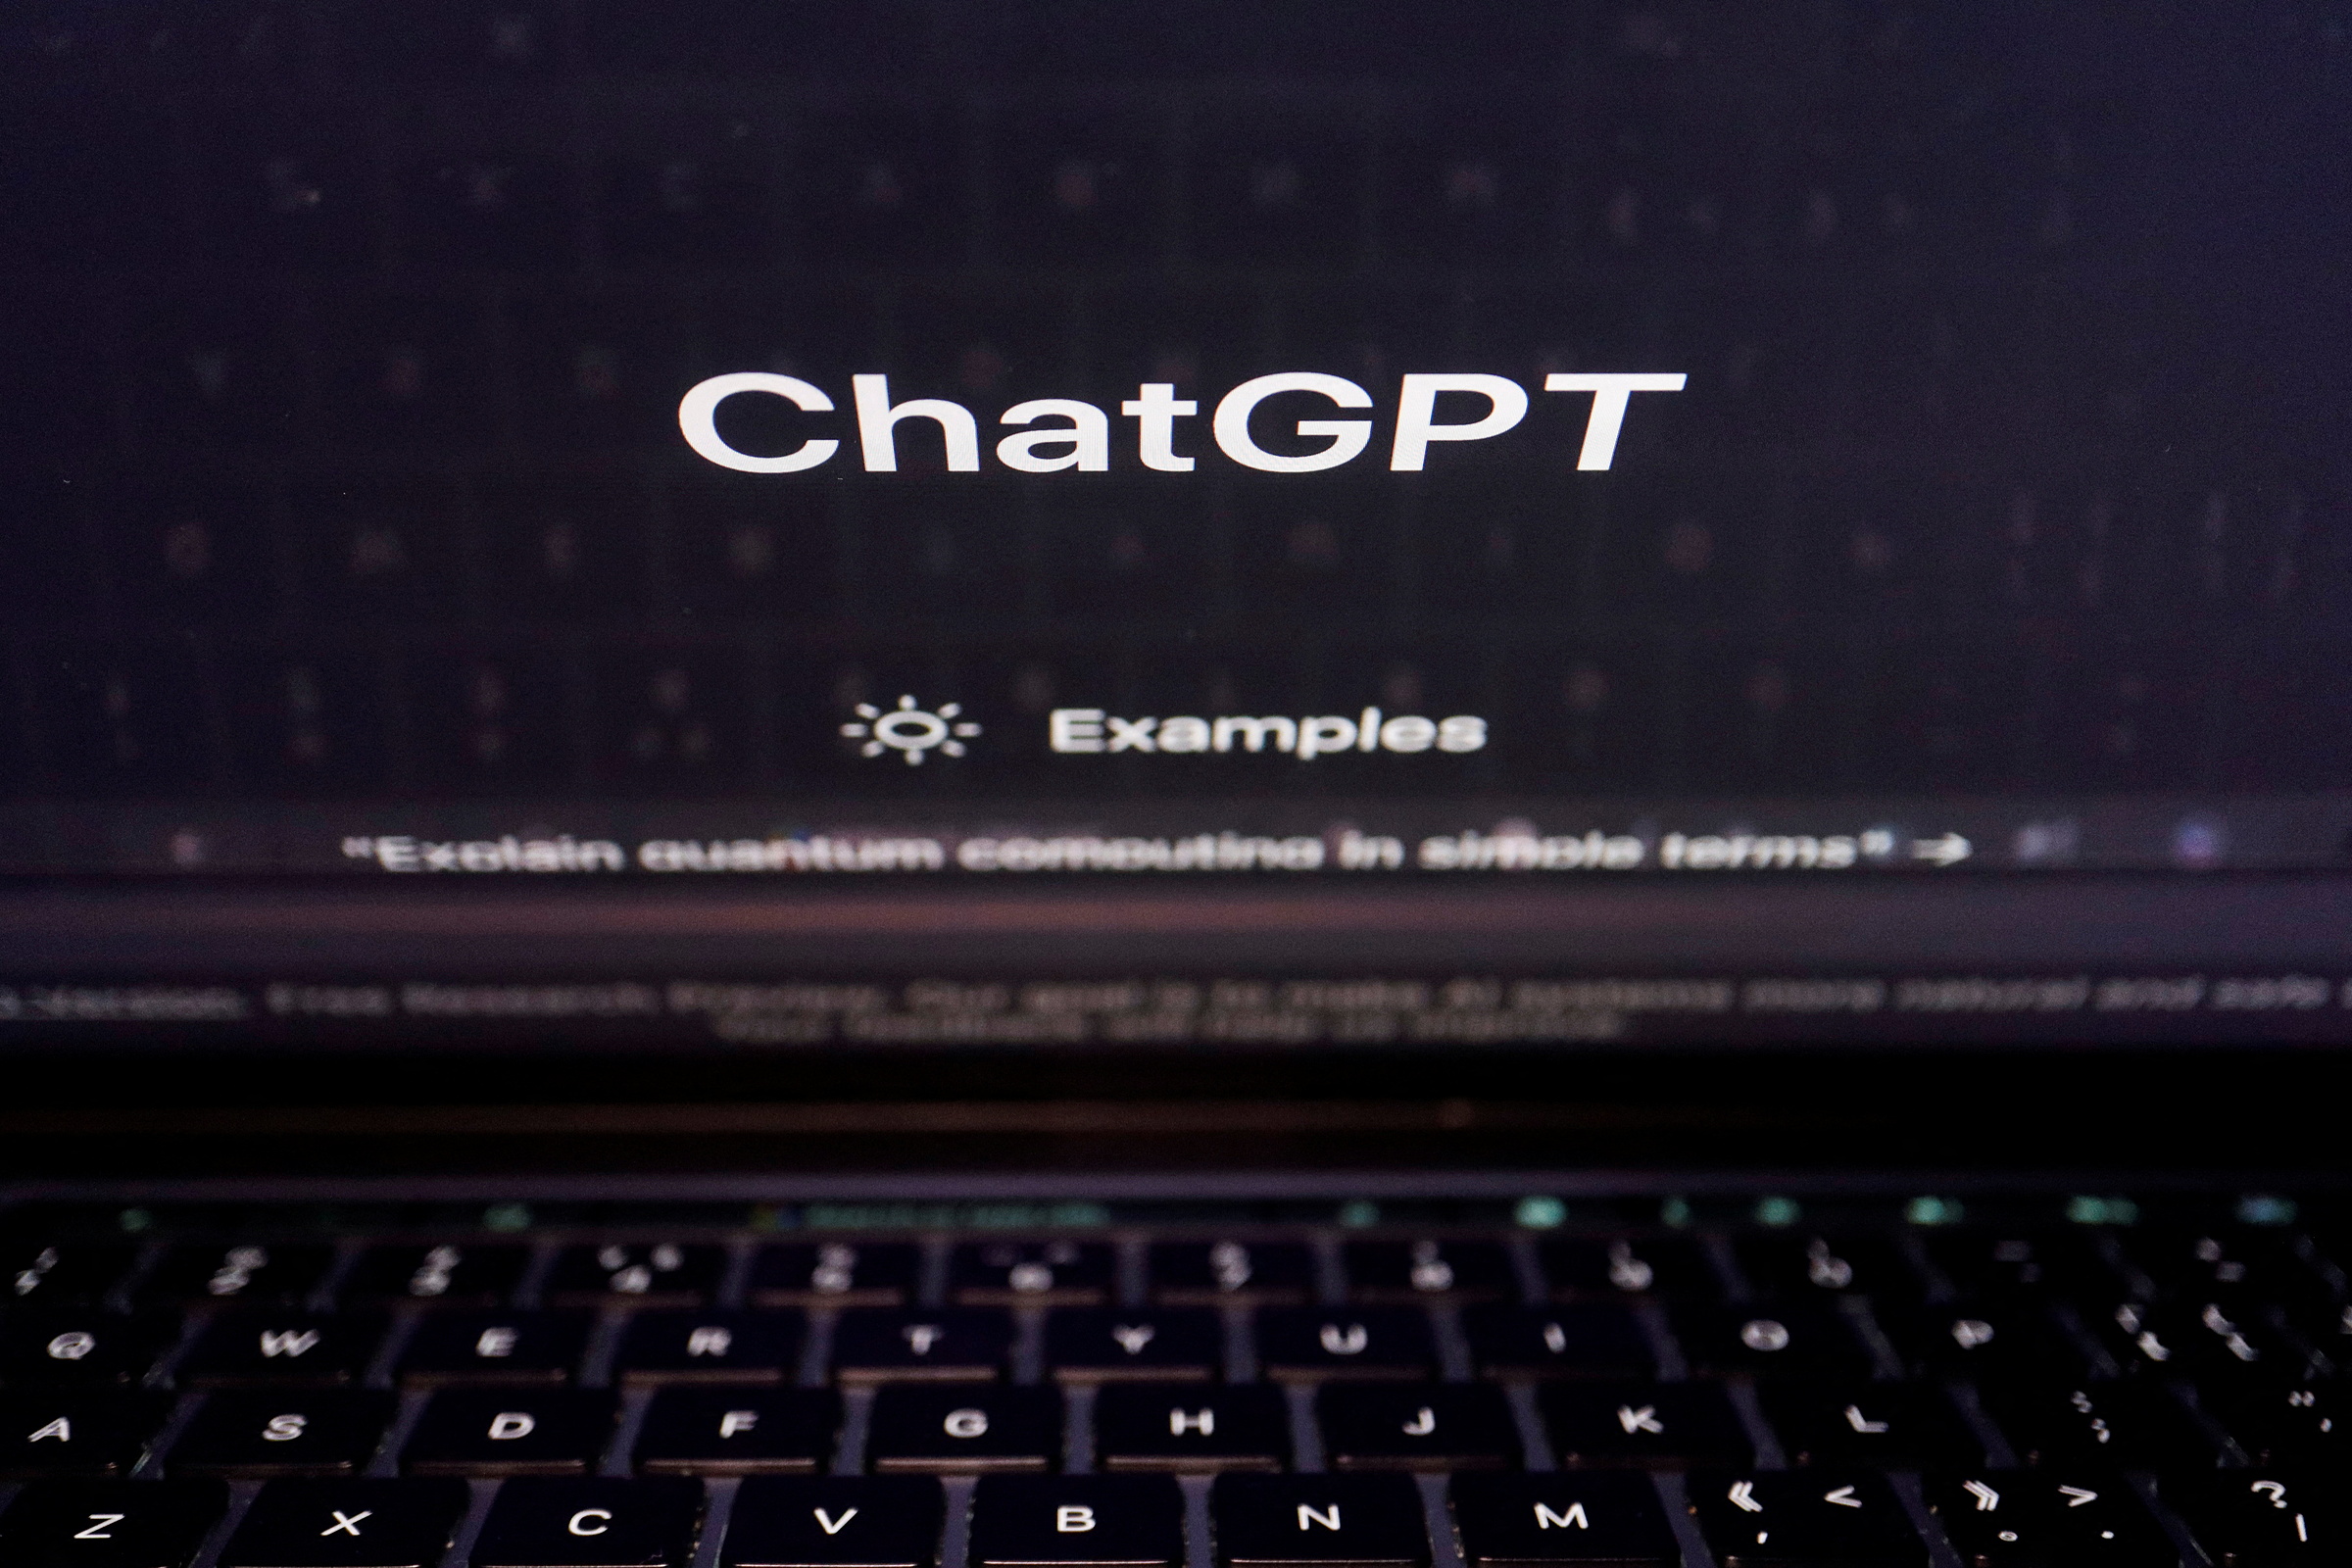 Giao diện website của ChatGPT - công cụ AI tạo sinh của OpenAI. Ảnh: Reuters